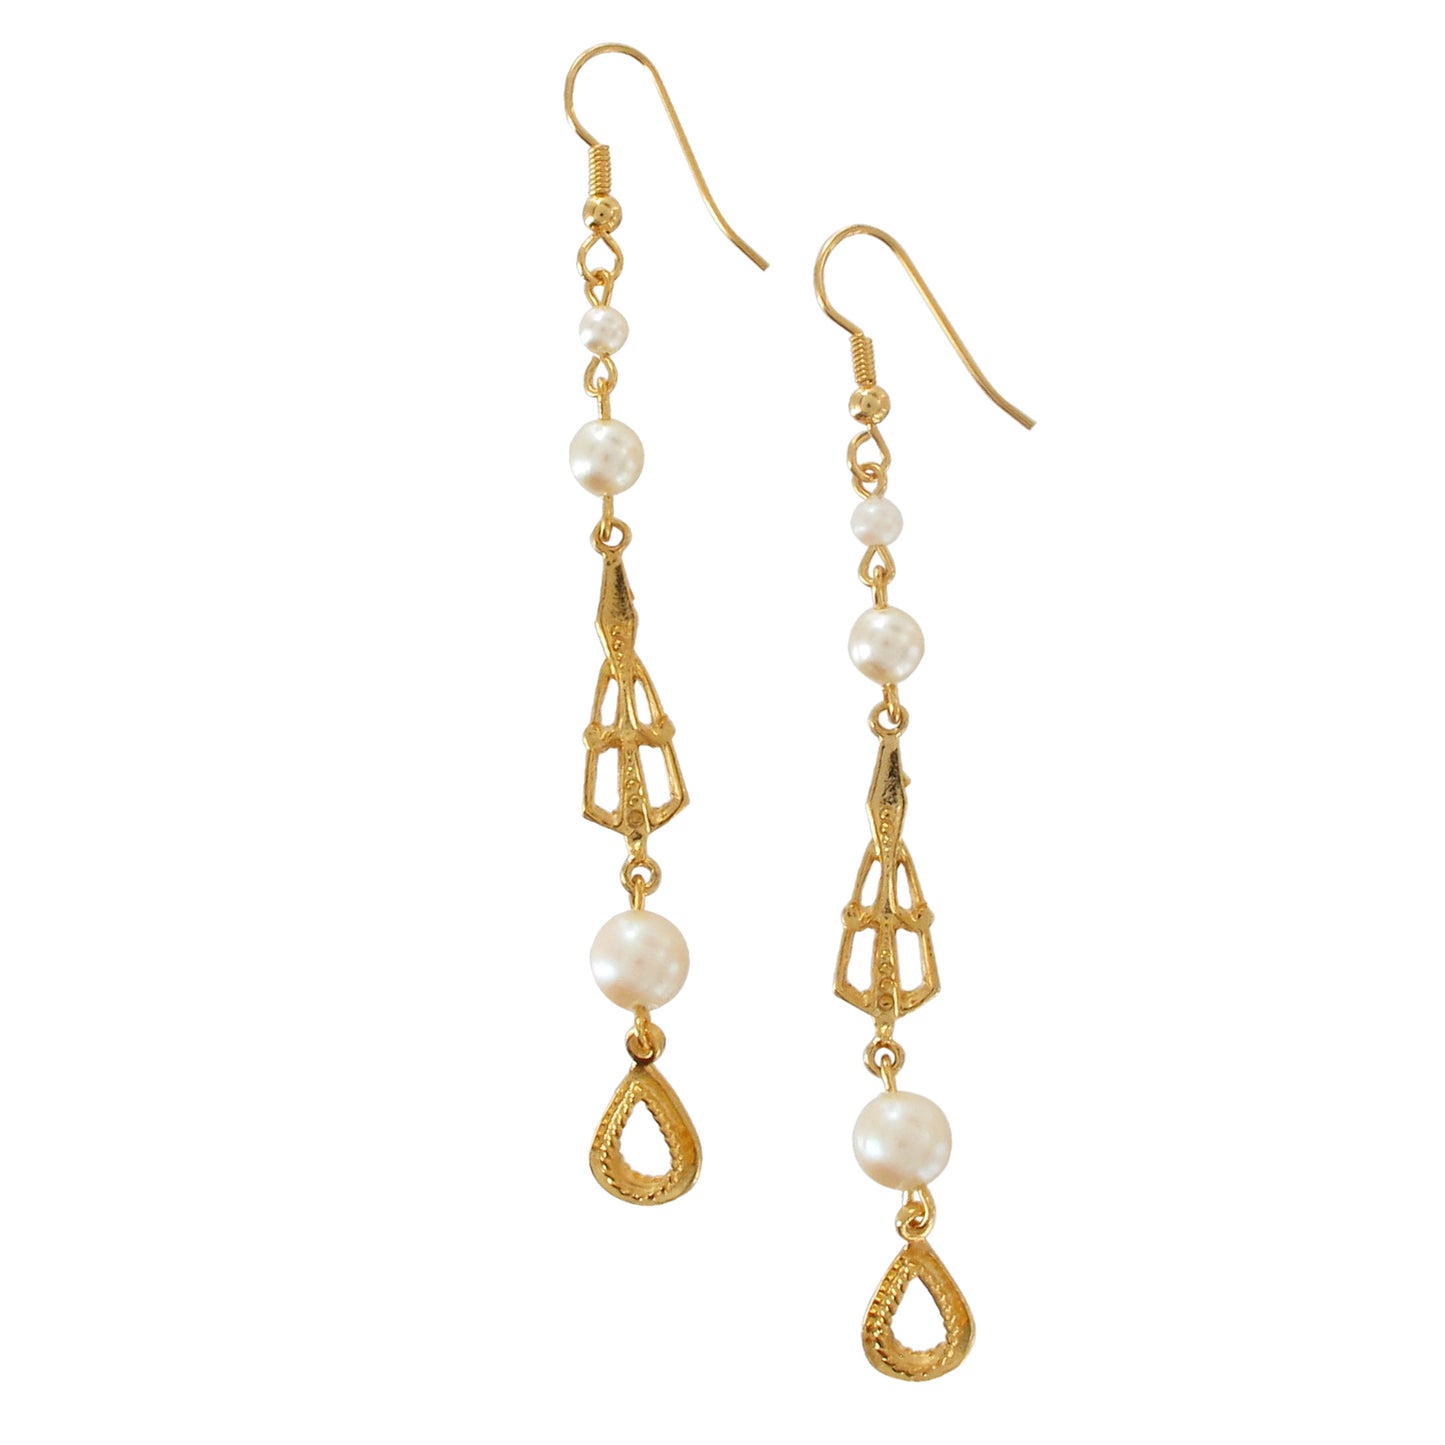 Long Faux Pearl Gold Tone Dangle Chandelier Earrings Victorian Style 3 3/4"